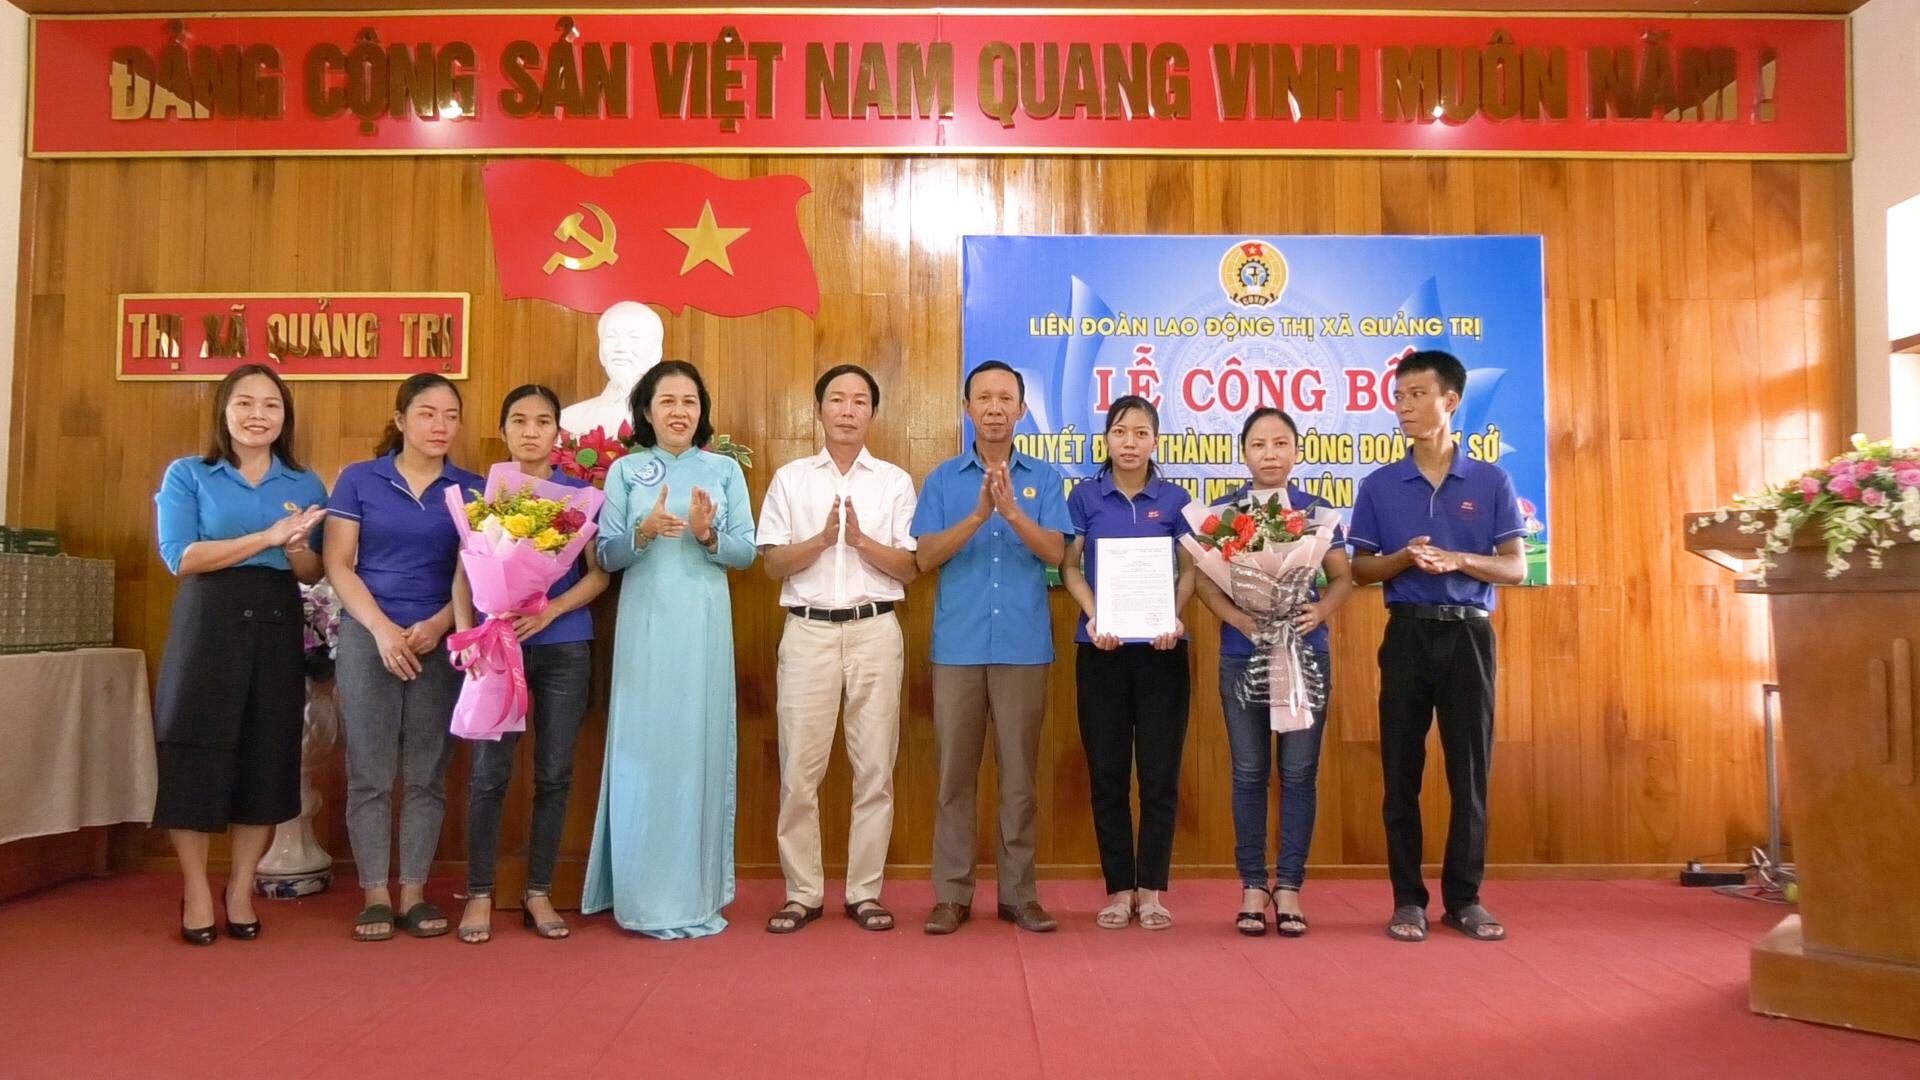 Lễ công bố thành lập Công đoàn cơ sở Công ty TNHH MTV Hải Vân Quảng Trị.